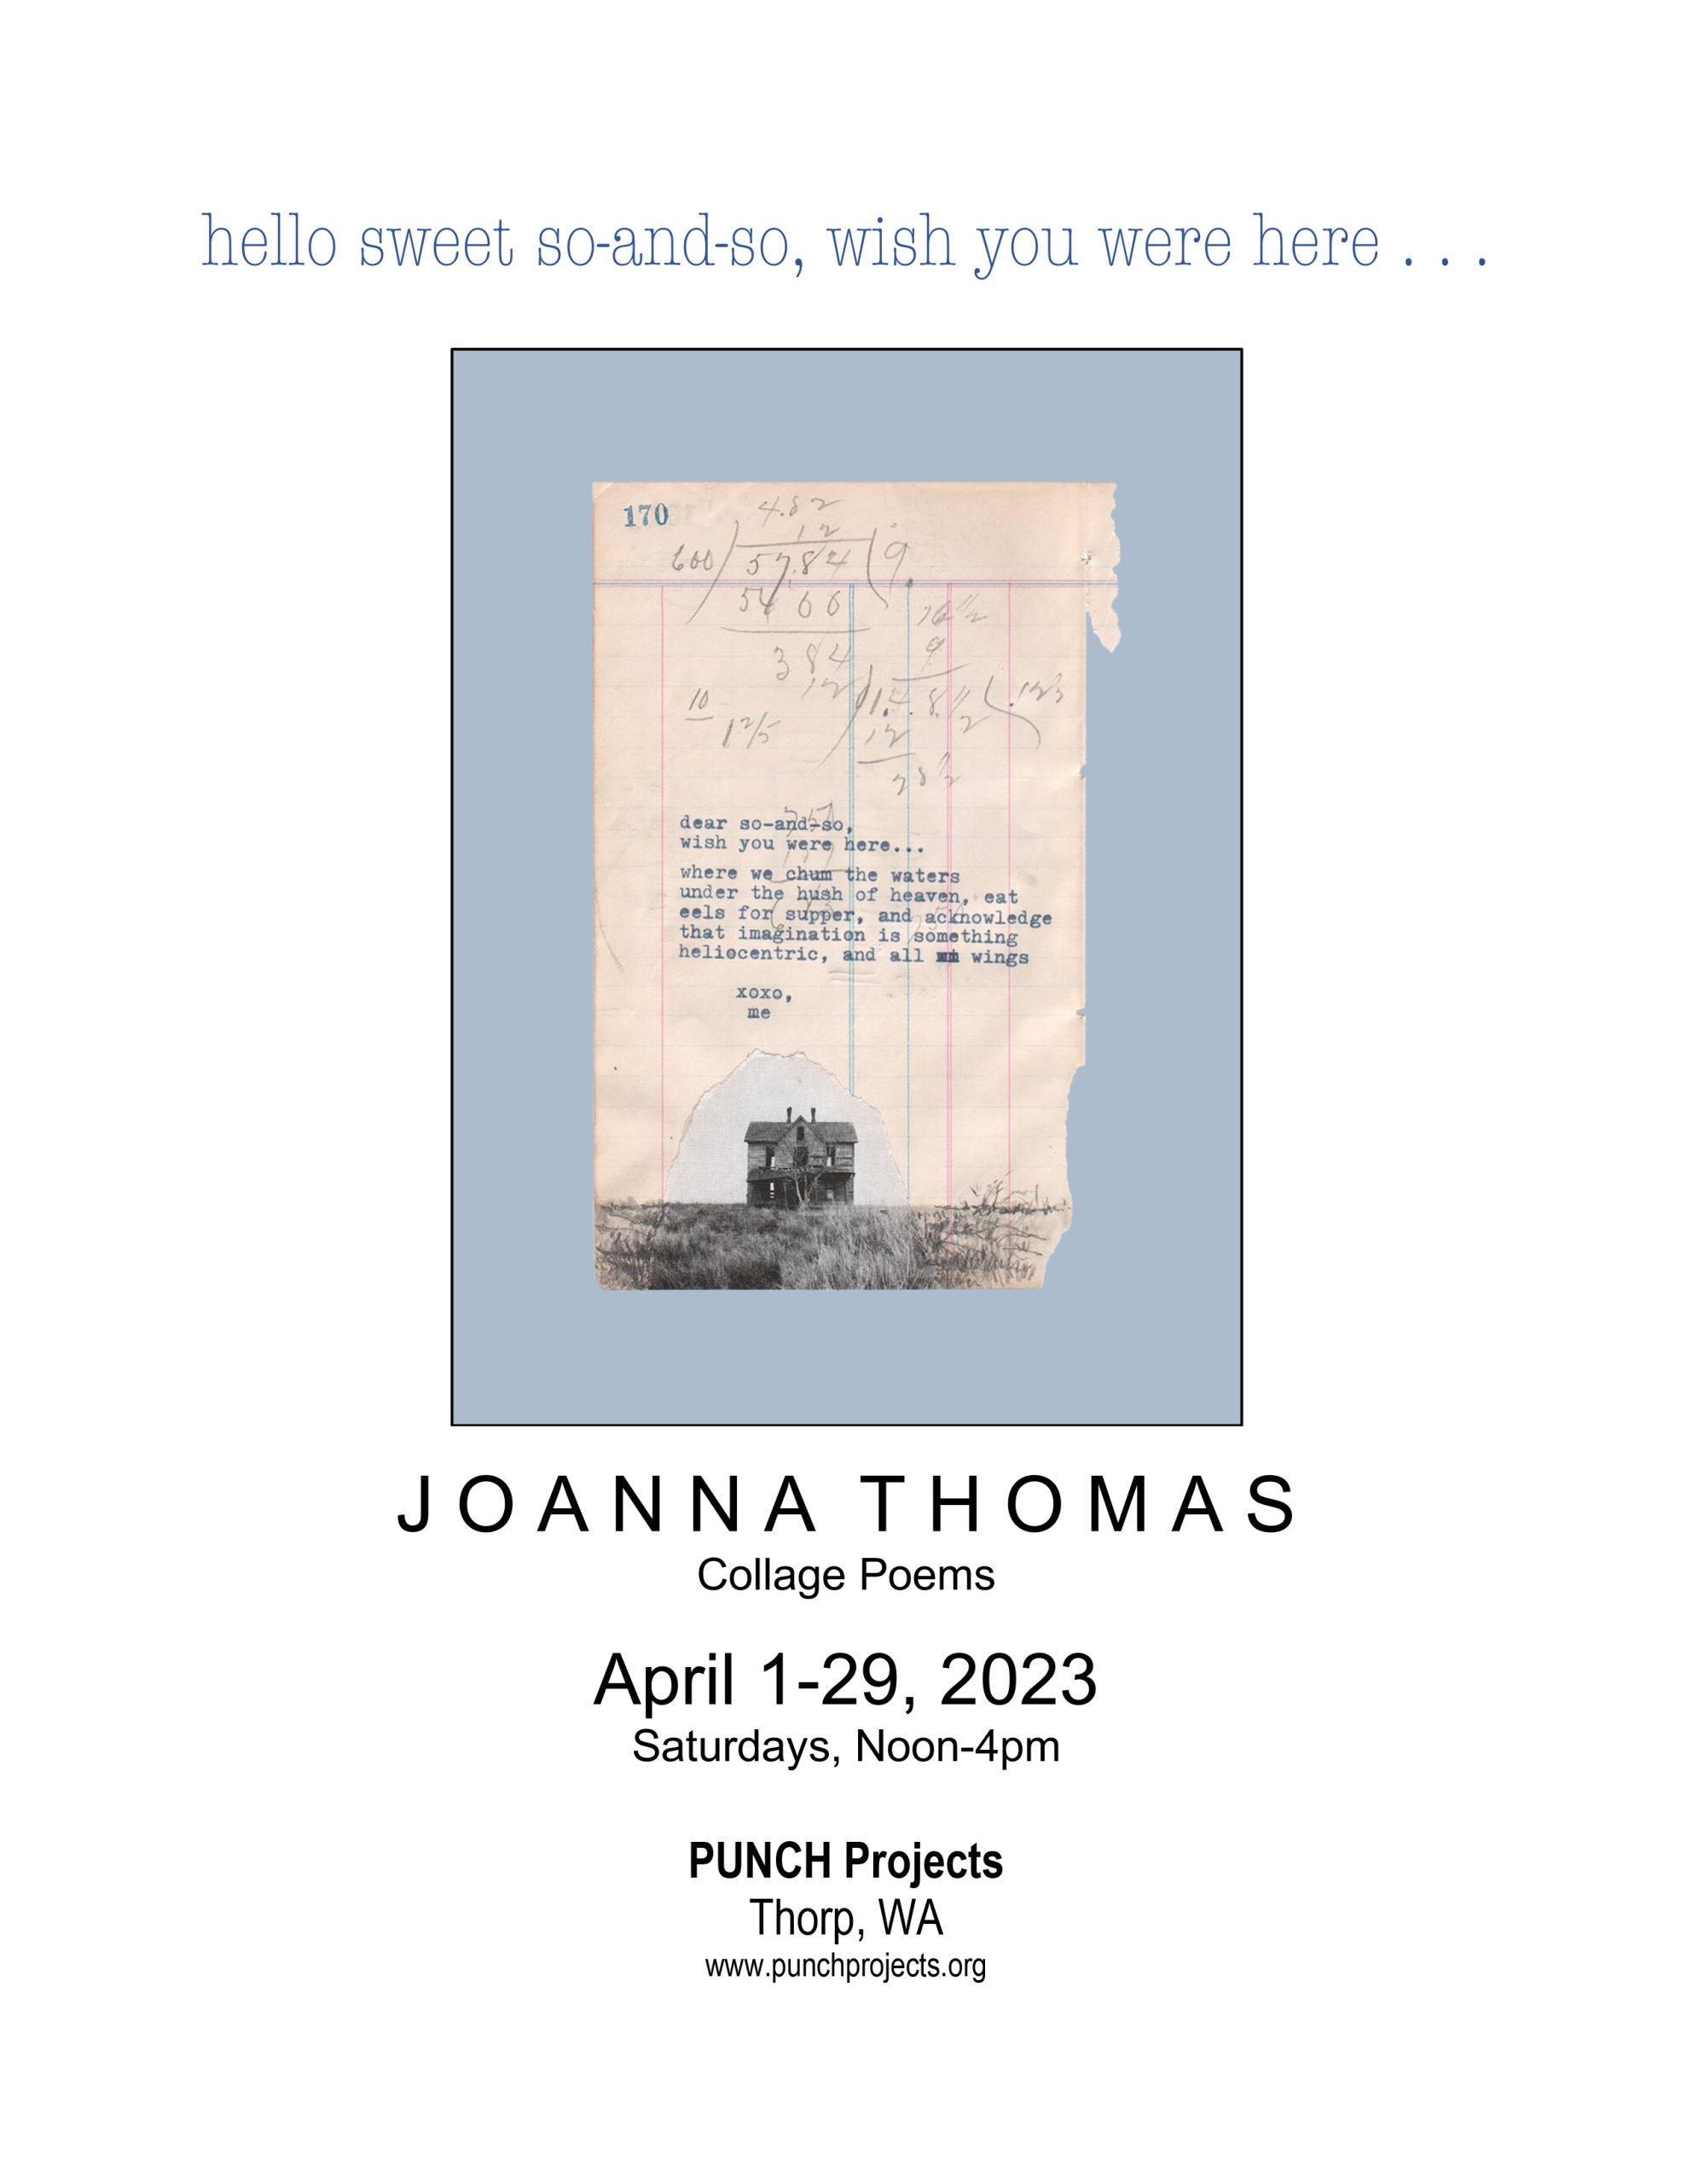 Joanna Thomas exhibition dear-so-and-so